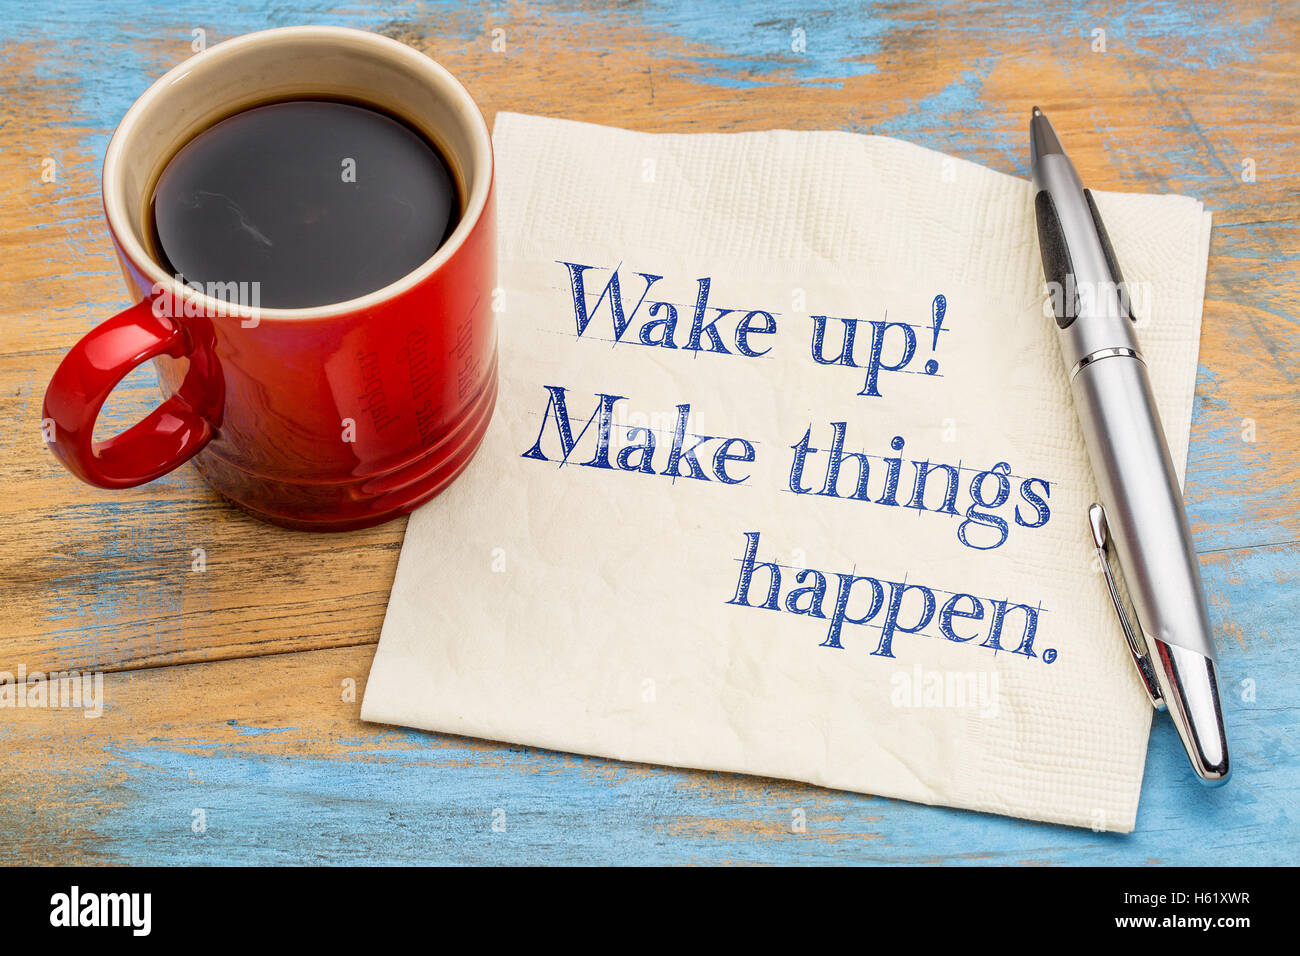 Aufwachen, Dinge passieren - Handschrift auf einer Serviette mit einer Tasse Kaffee Stockfoto